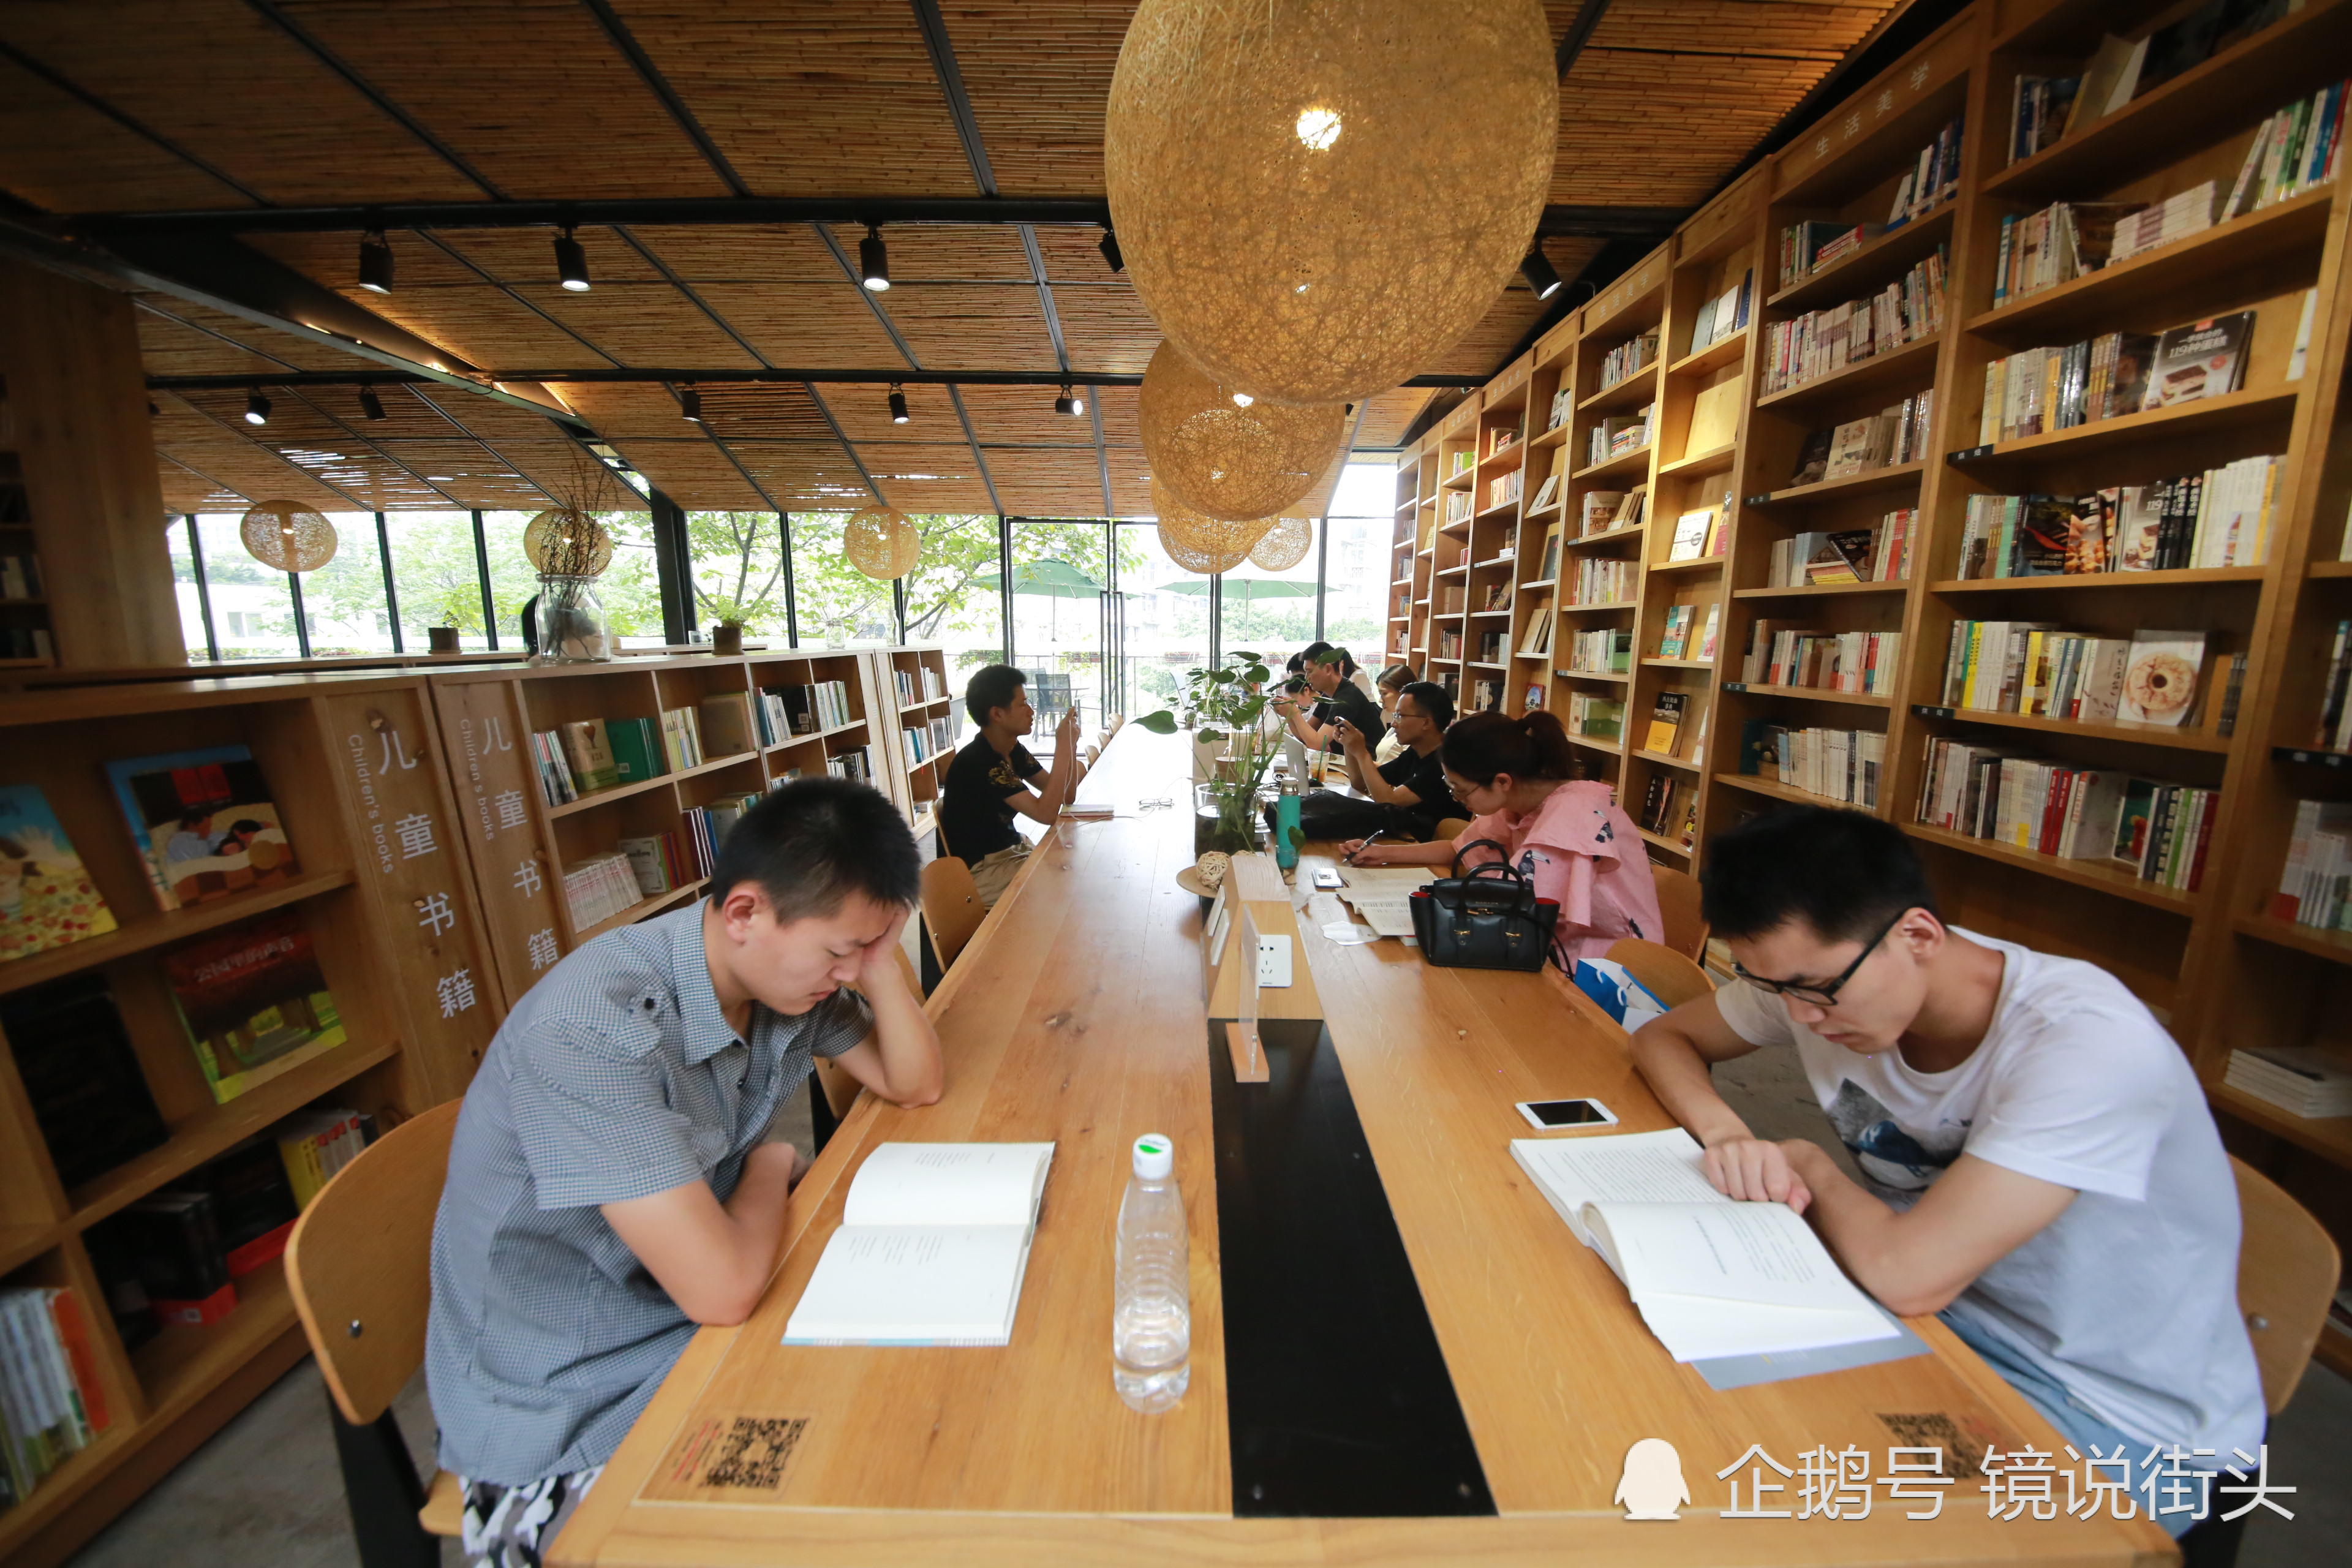 邂逅重庆最美图书馆 高颜值文艺范刷爆朋友圈